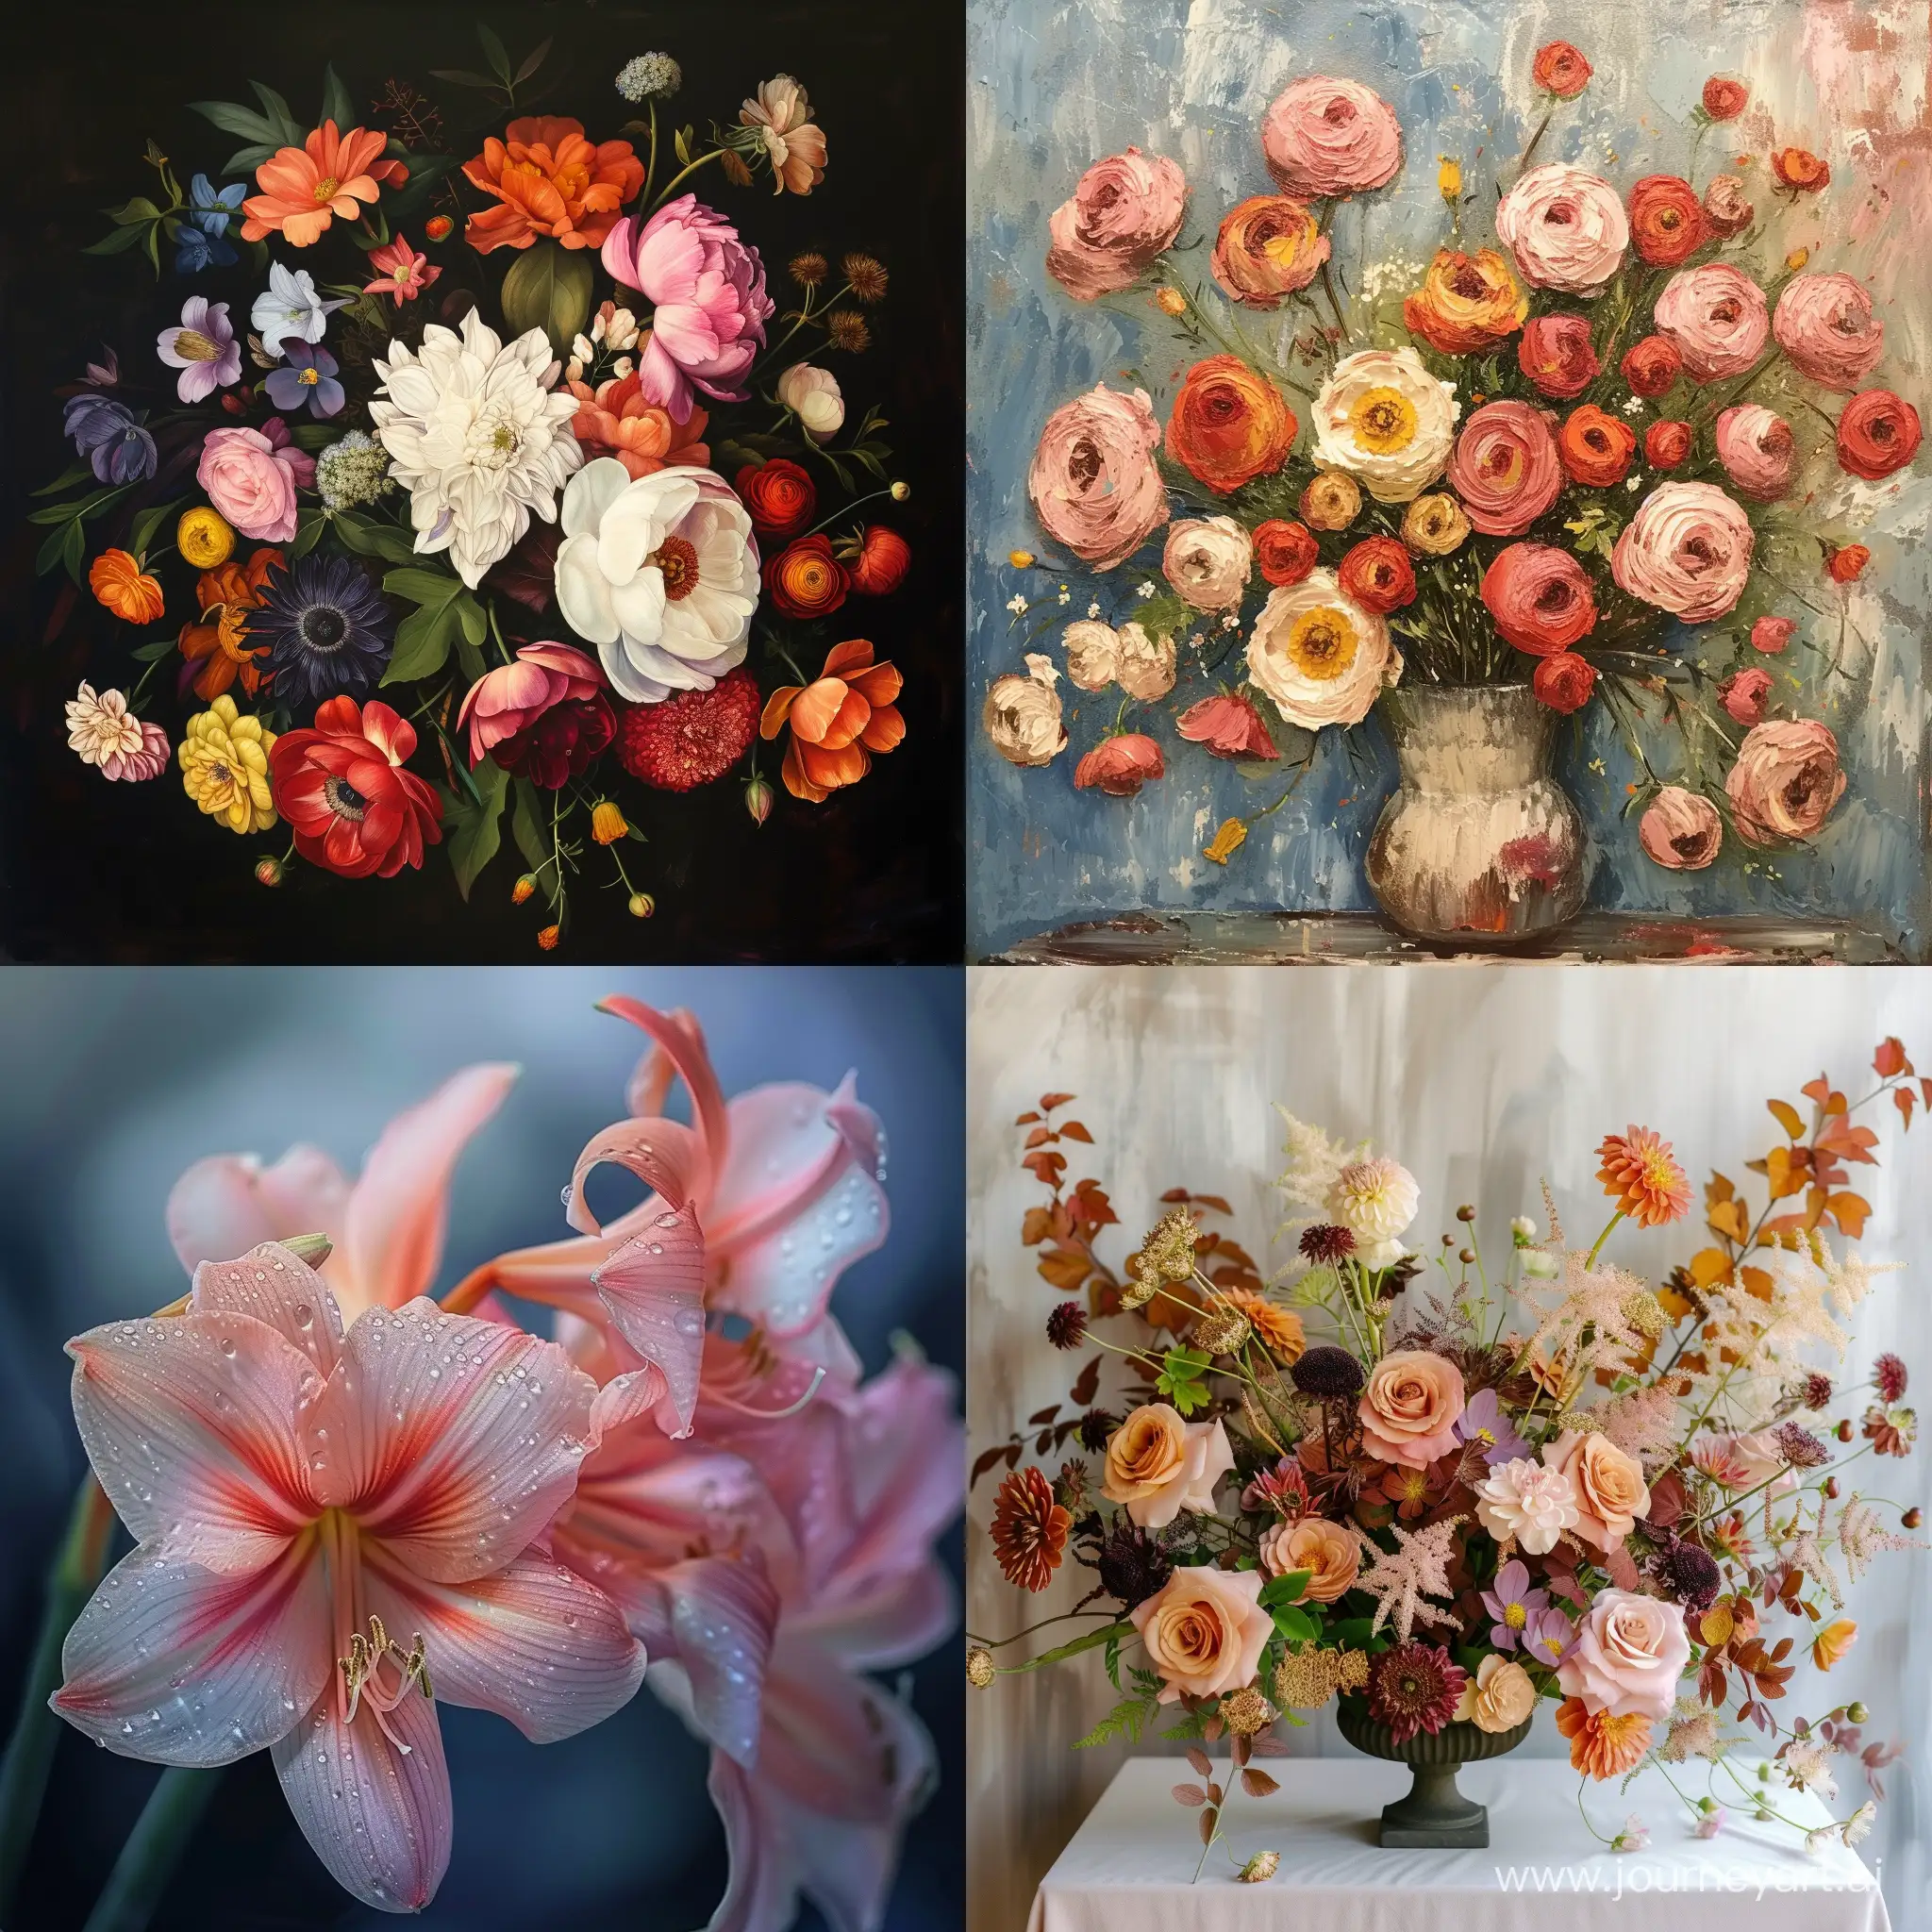 Vibrant-Floral-Arrangement-Colorful-Blossoms-in-a-Square-Composition